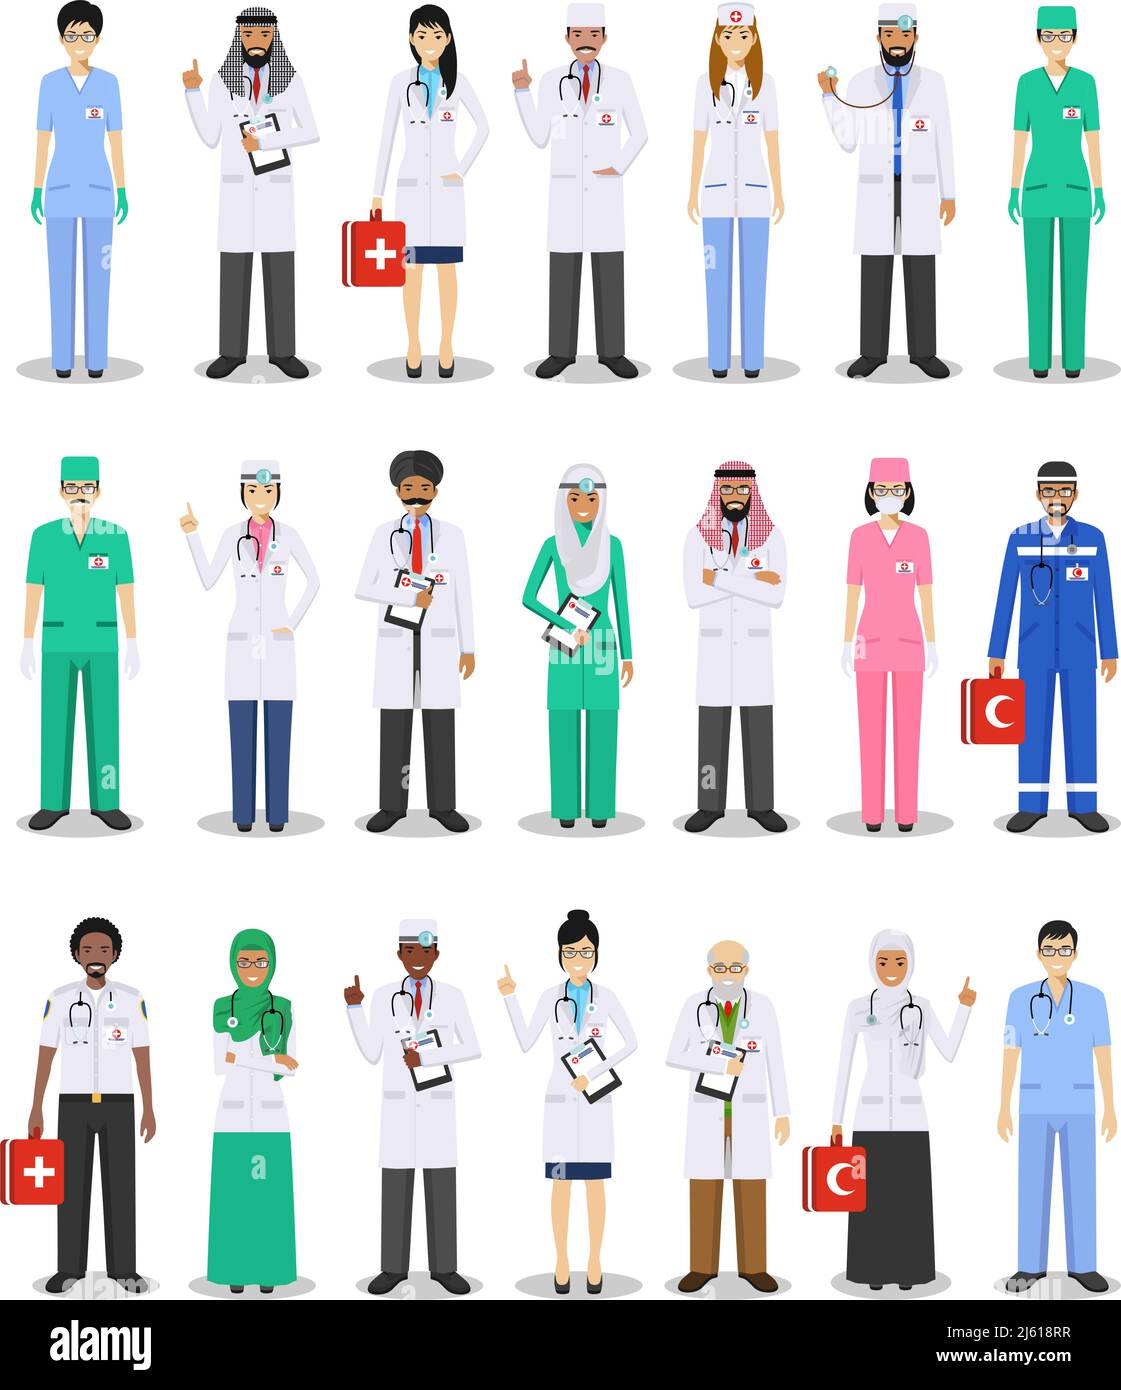 Internationales medizinisches Konzept. Detaillierte Darstellung von medizinischen Personen in flacher Ausführung auf weißem Hintergrund. Praktizierende Ärzte Mann und Frau stehen Stock Vektor